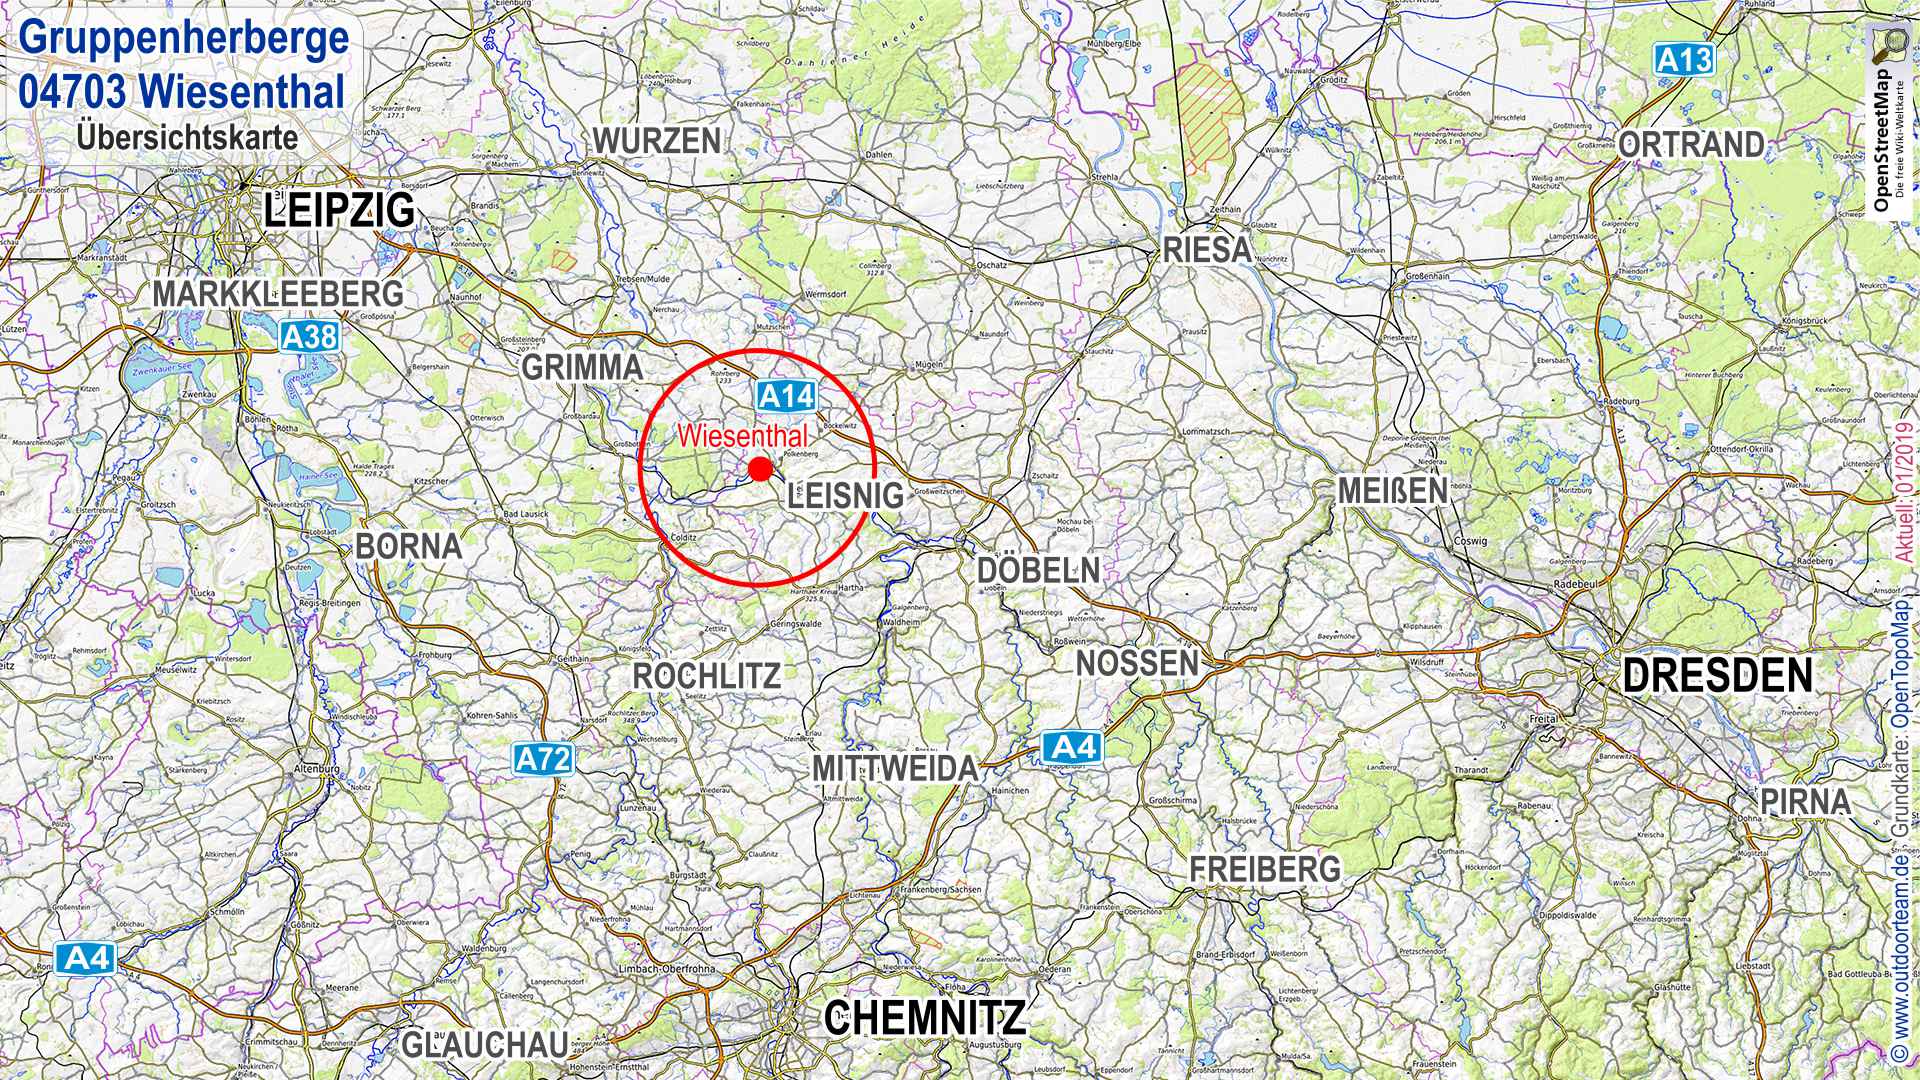 Übersichtskarte Sachsen mit markiertem Standort 04703 Wiesenthal - Kurs Wildnisküche